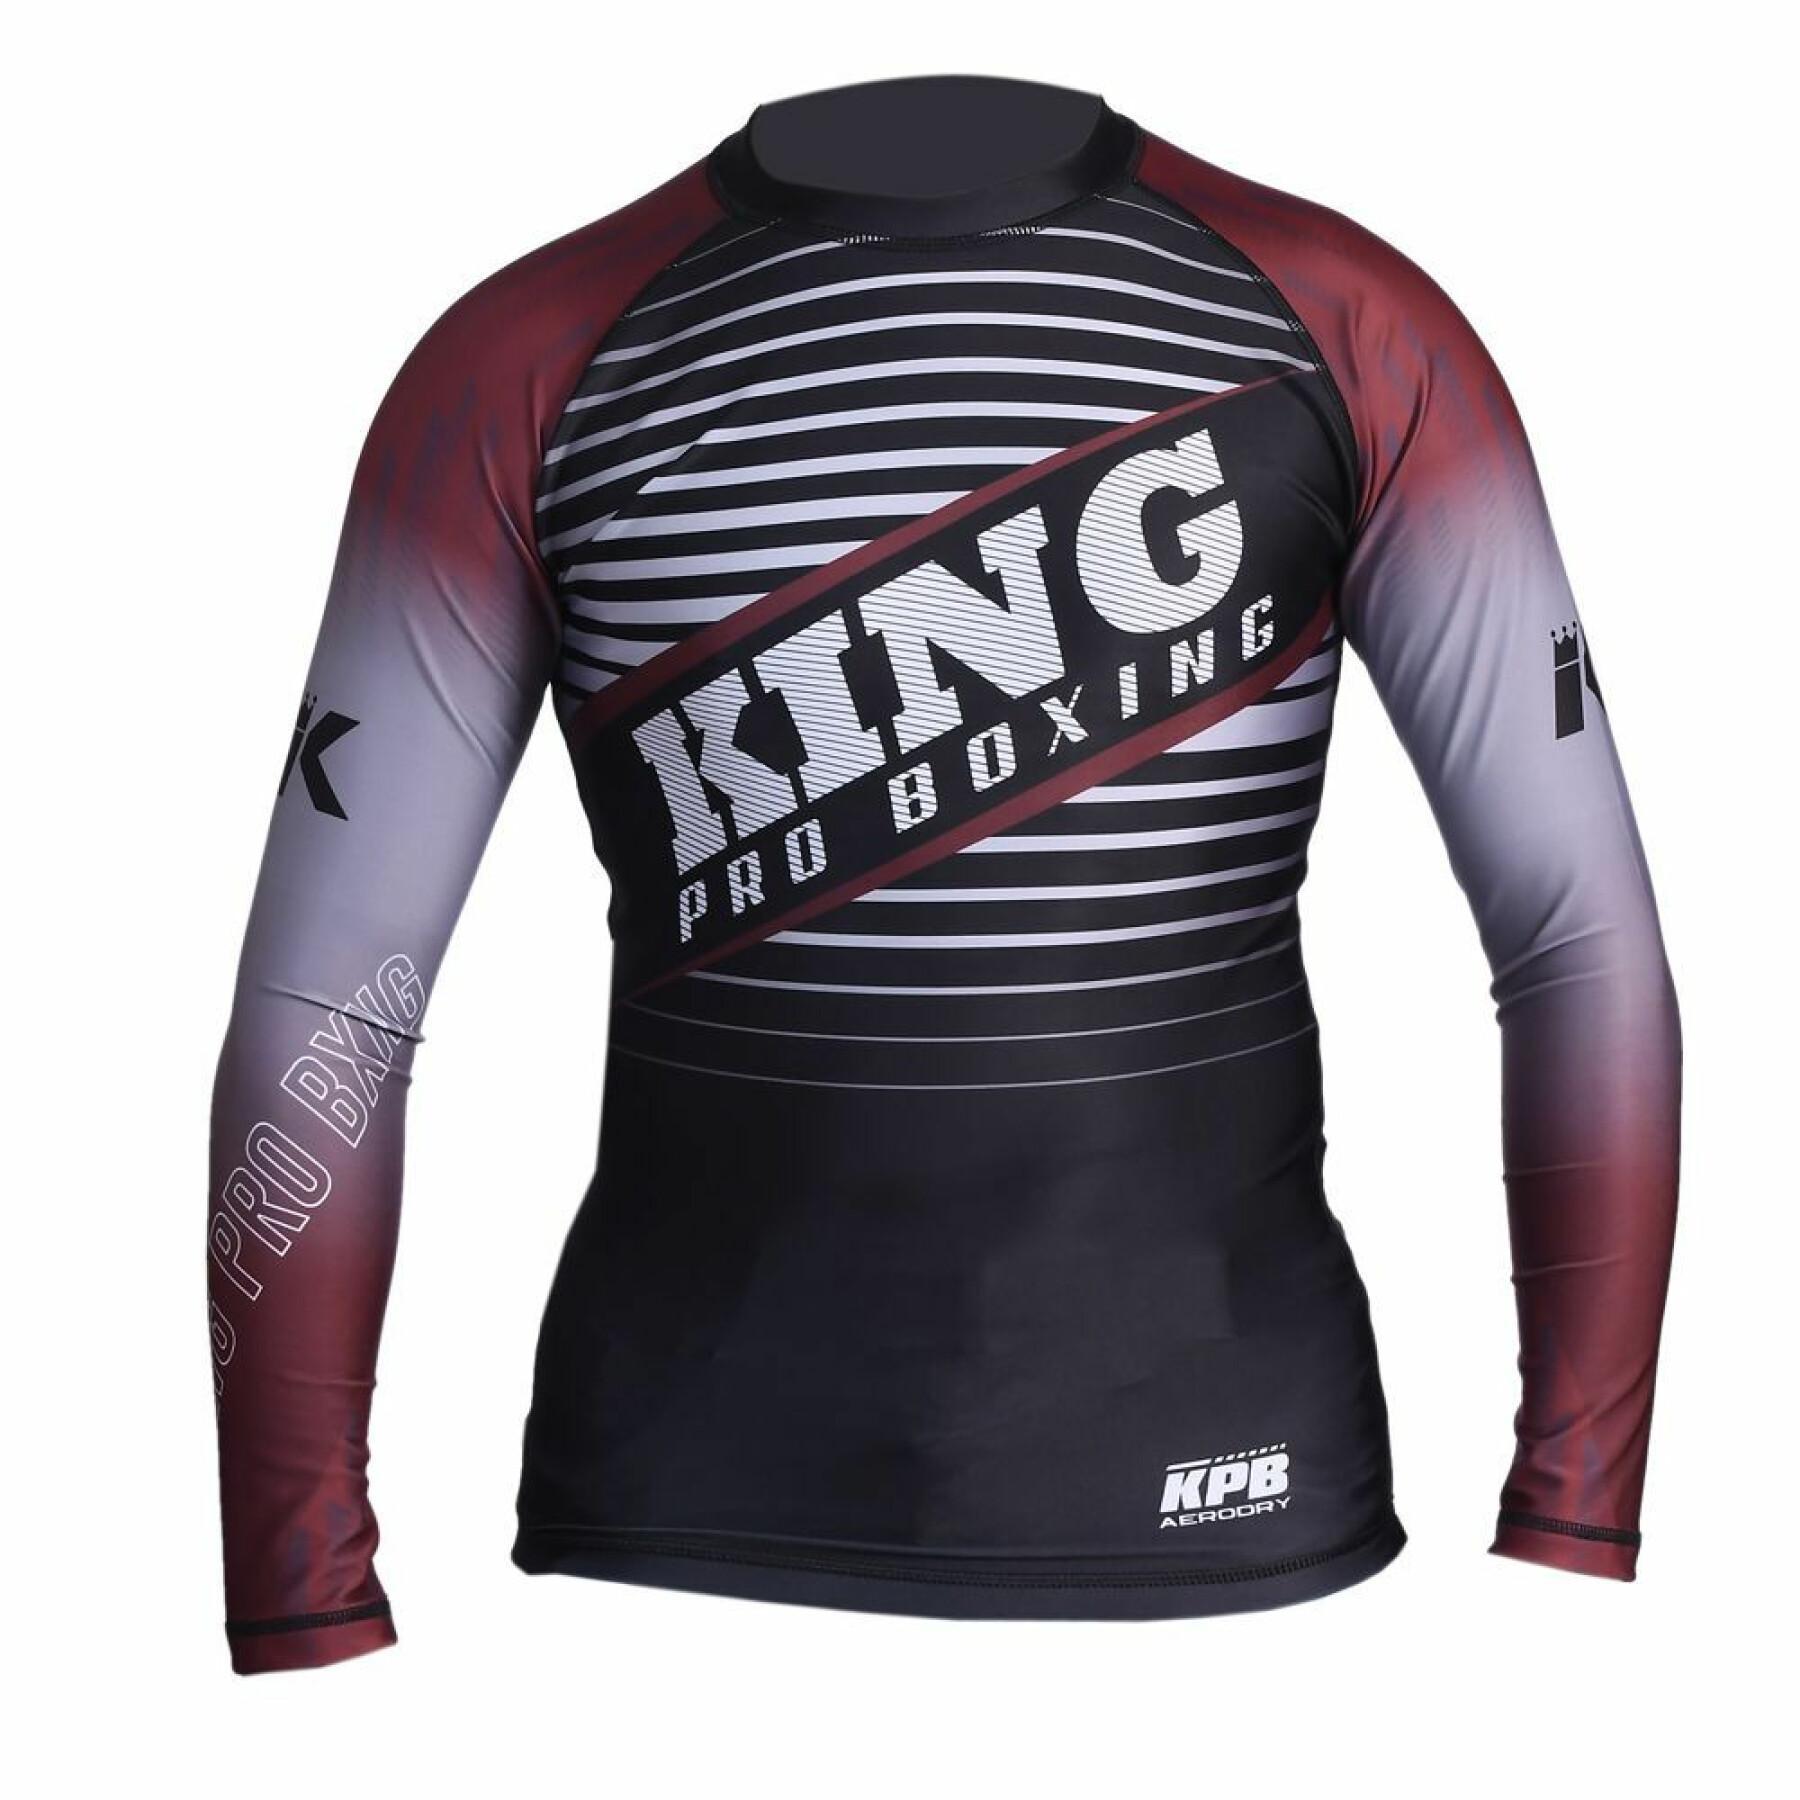 CamisetaKing Pro Boxing Stormking 2 Rashg